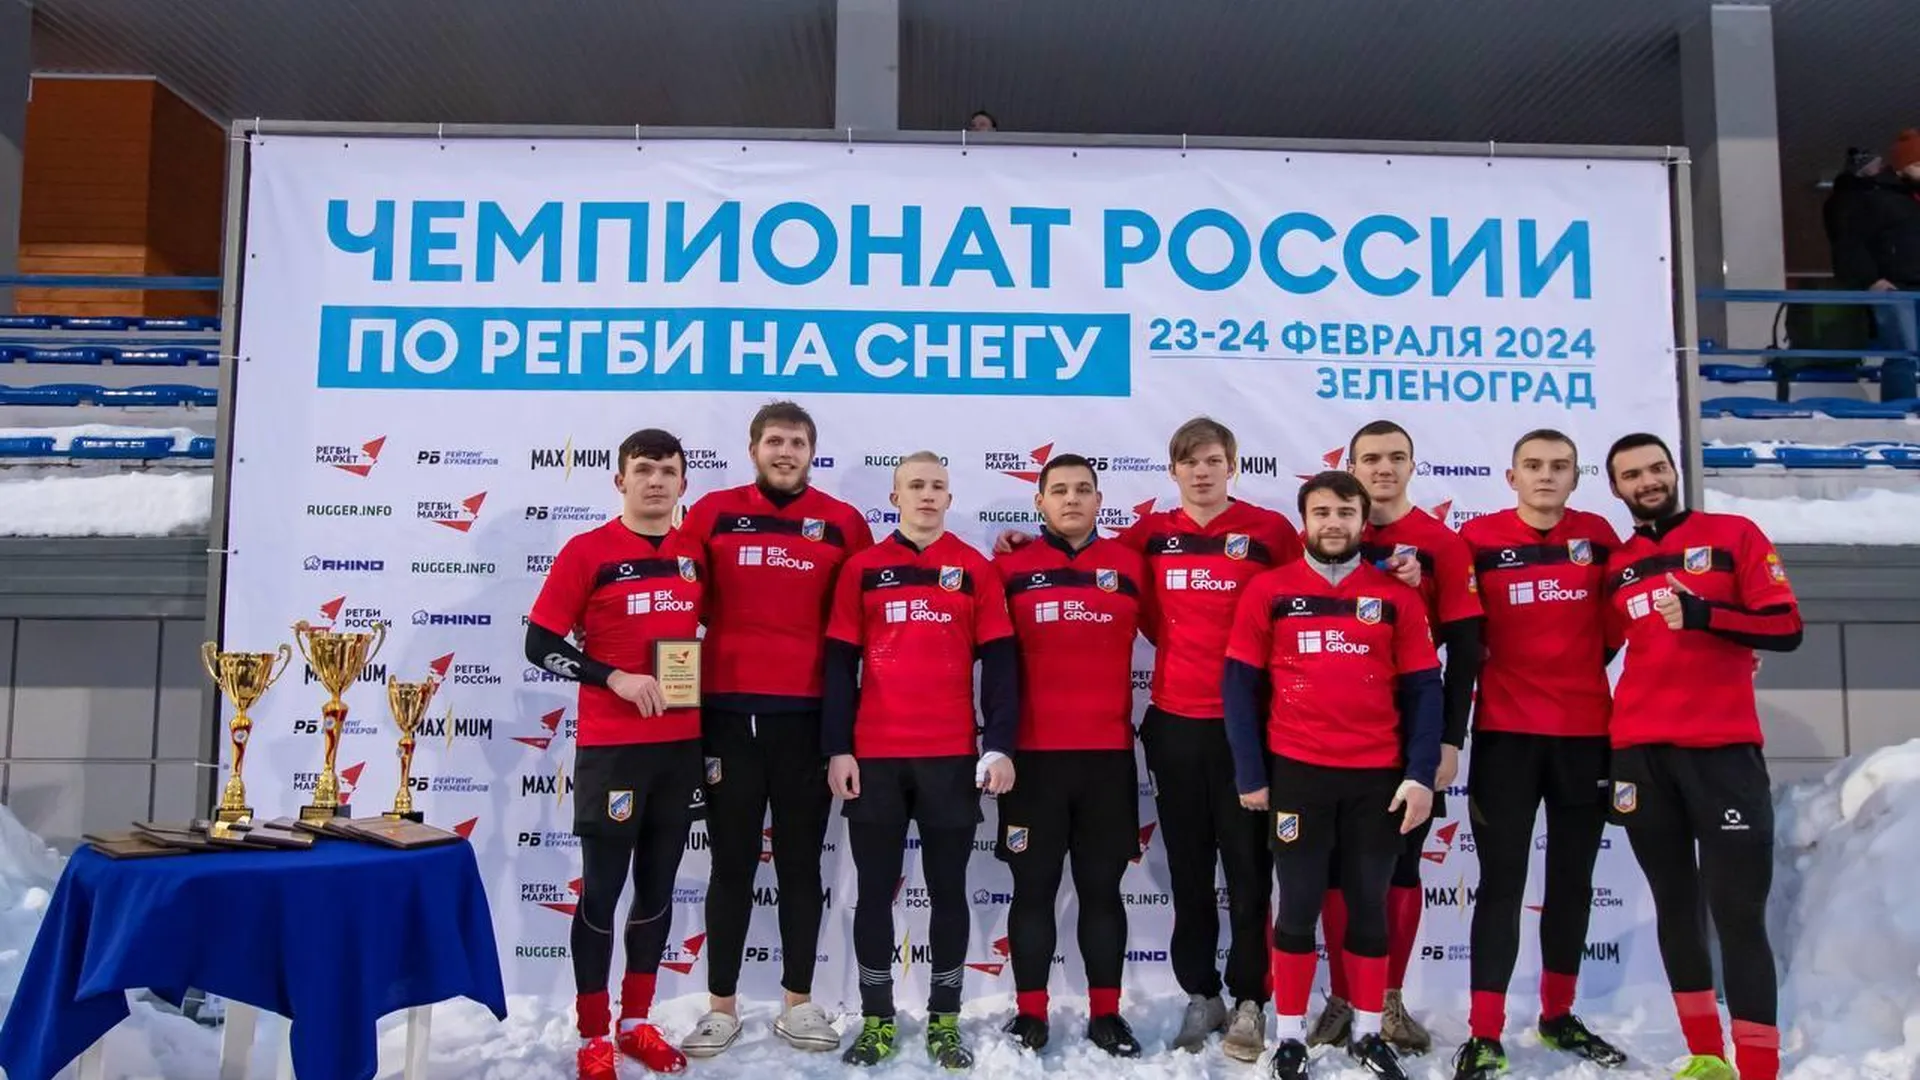 Команда «ВВА‑Подмосковье» завоевал бронзу чемпионата России по регби на снегу